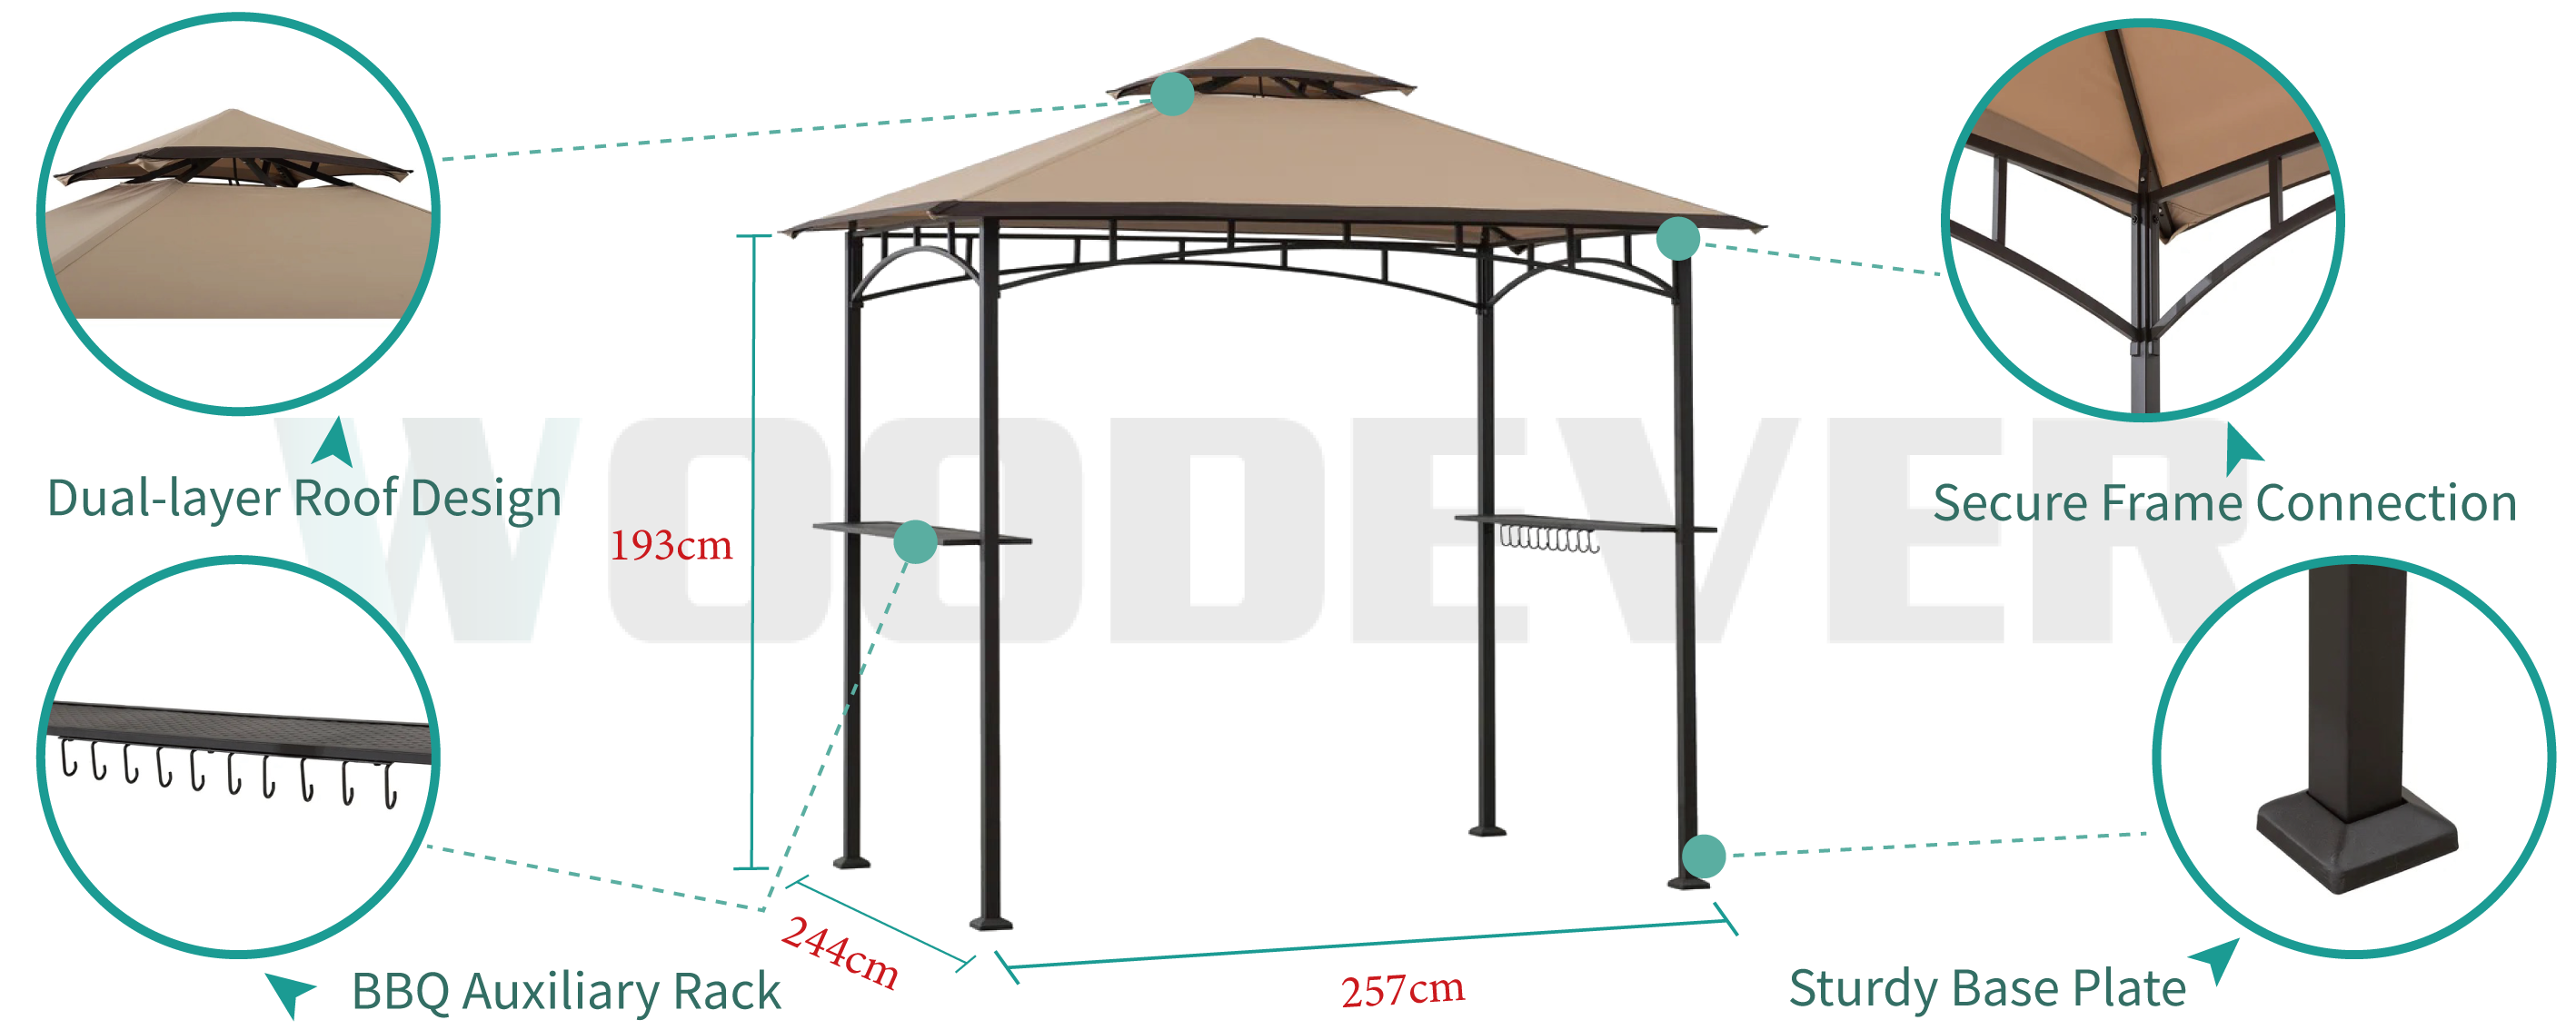 Pergola de barbecue en métal pour l'extérieur de WOODEVER avec double toit, ventilation à 360 degrés, étagères métalliques et crochets pour améliorer l'expérience d'utilisation en extérieur.